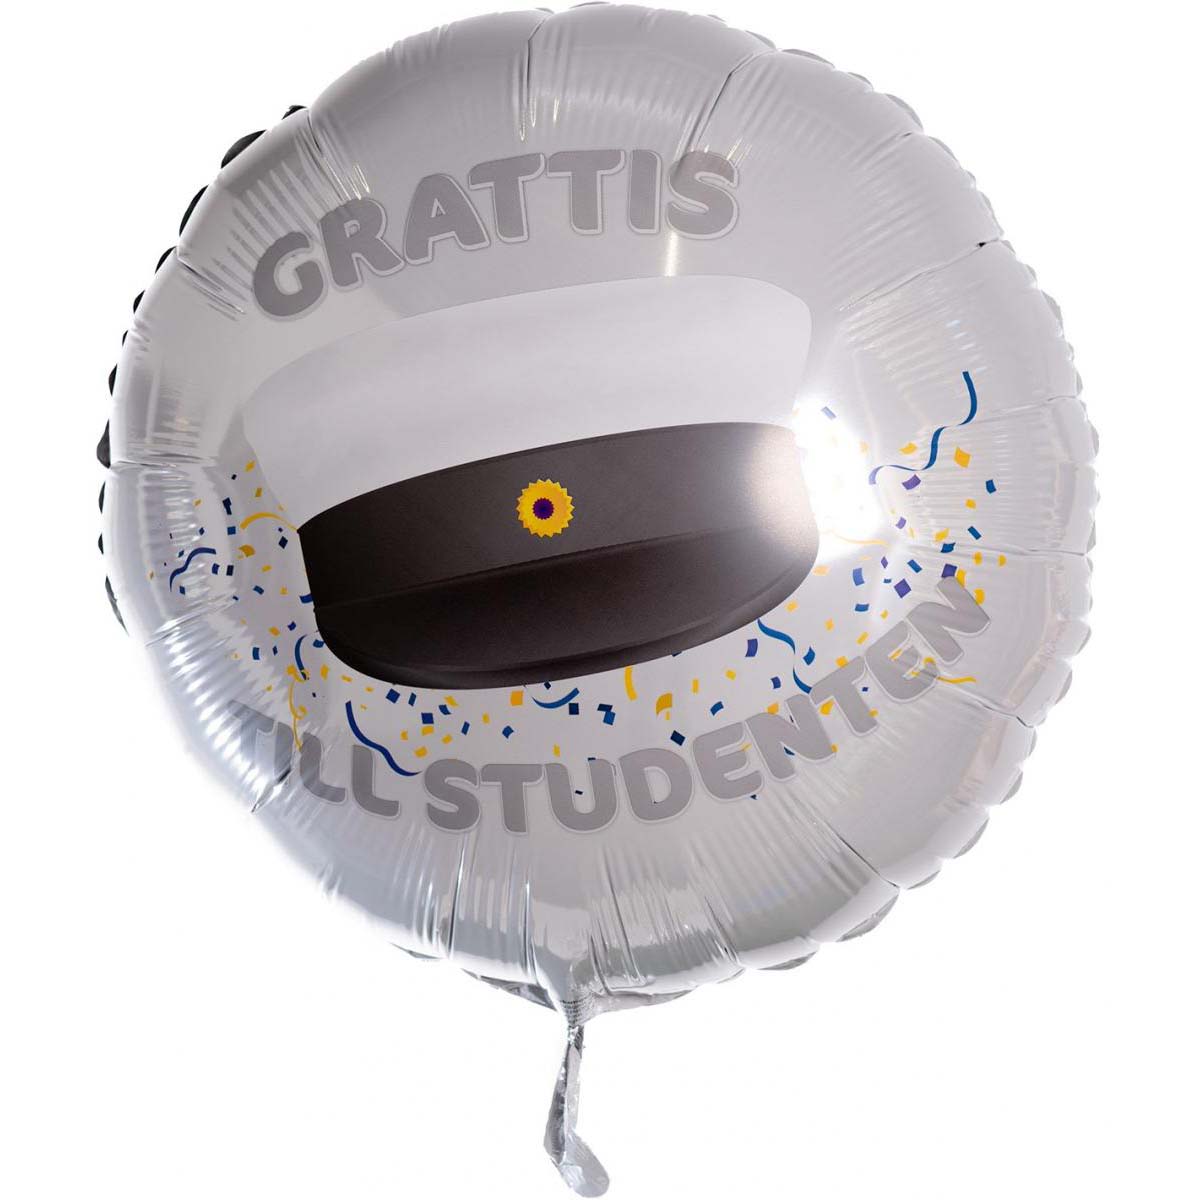 Folieballong, Grattis till studenten 53 cm